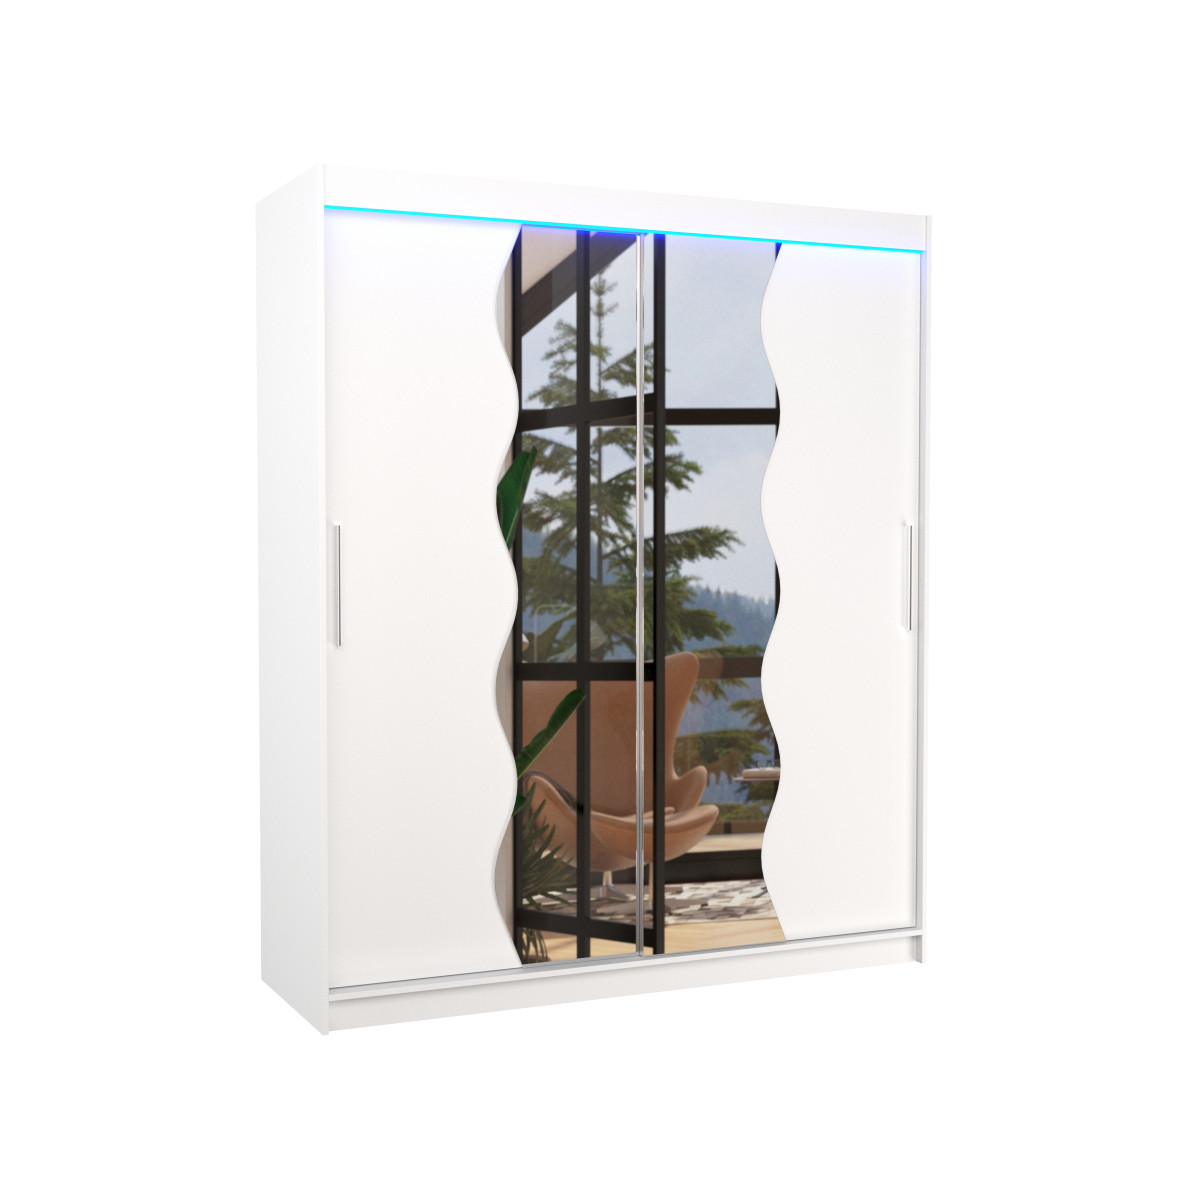 Šatníková skriňa s posuvnými dverami, zrkadlom a ľad osvetlením LED KANSAS